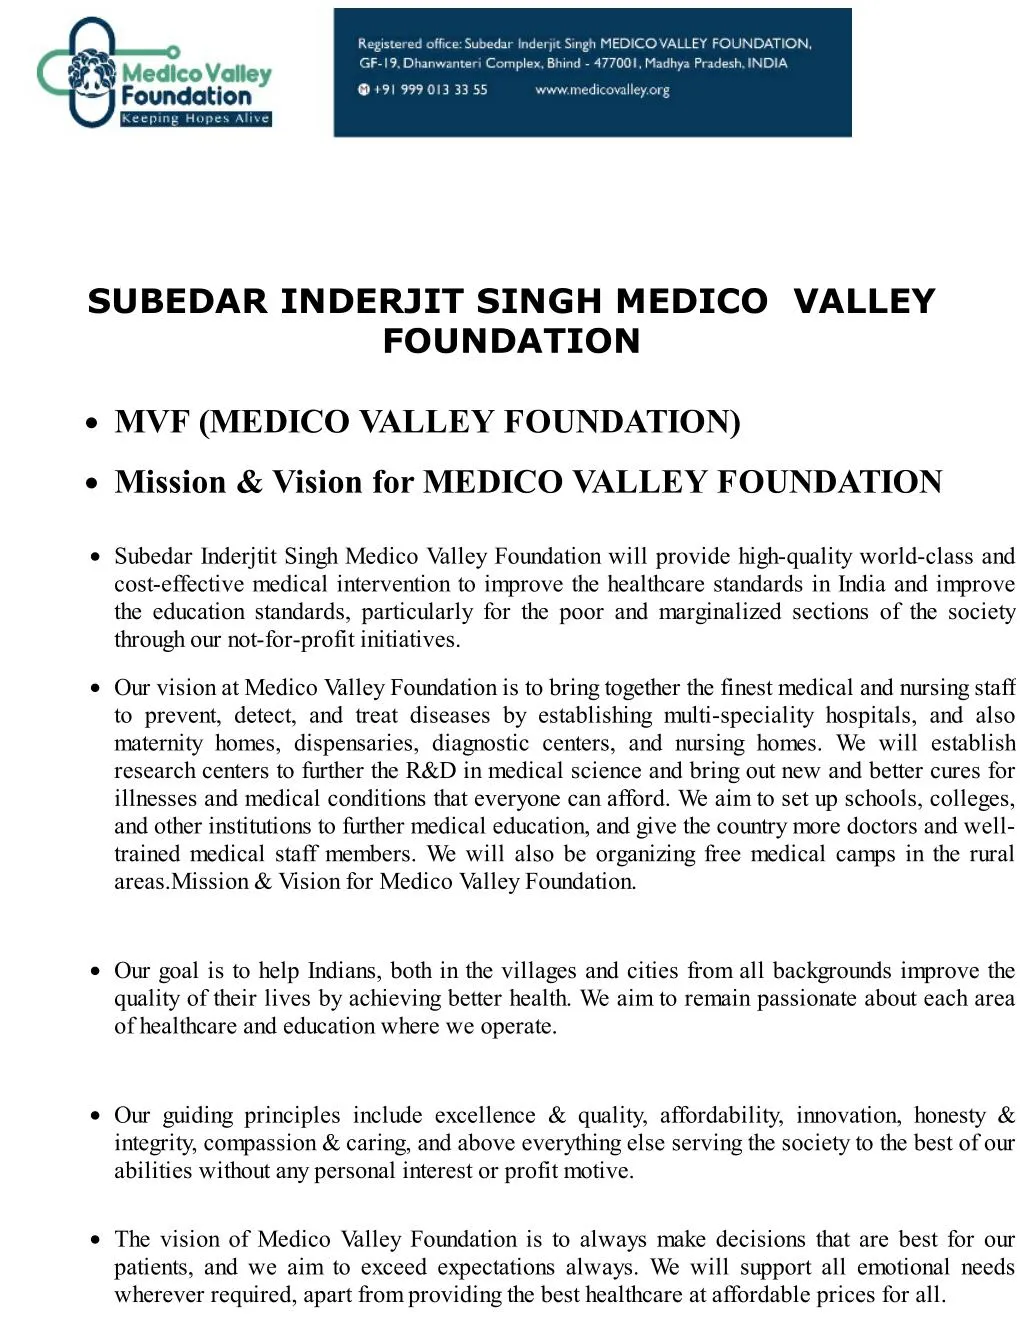 subedar inderjit singh medico valley foundation